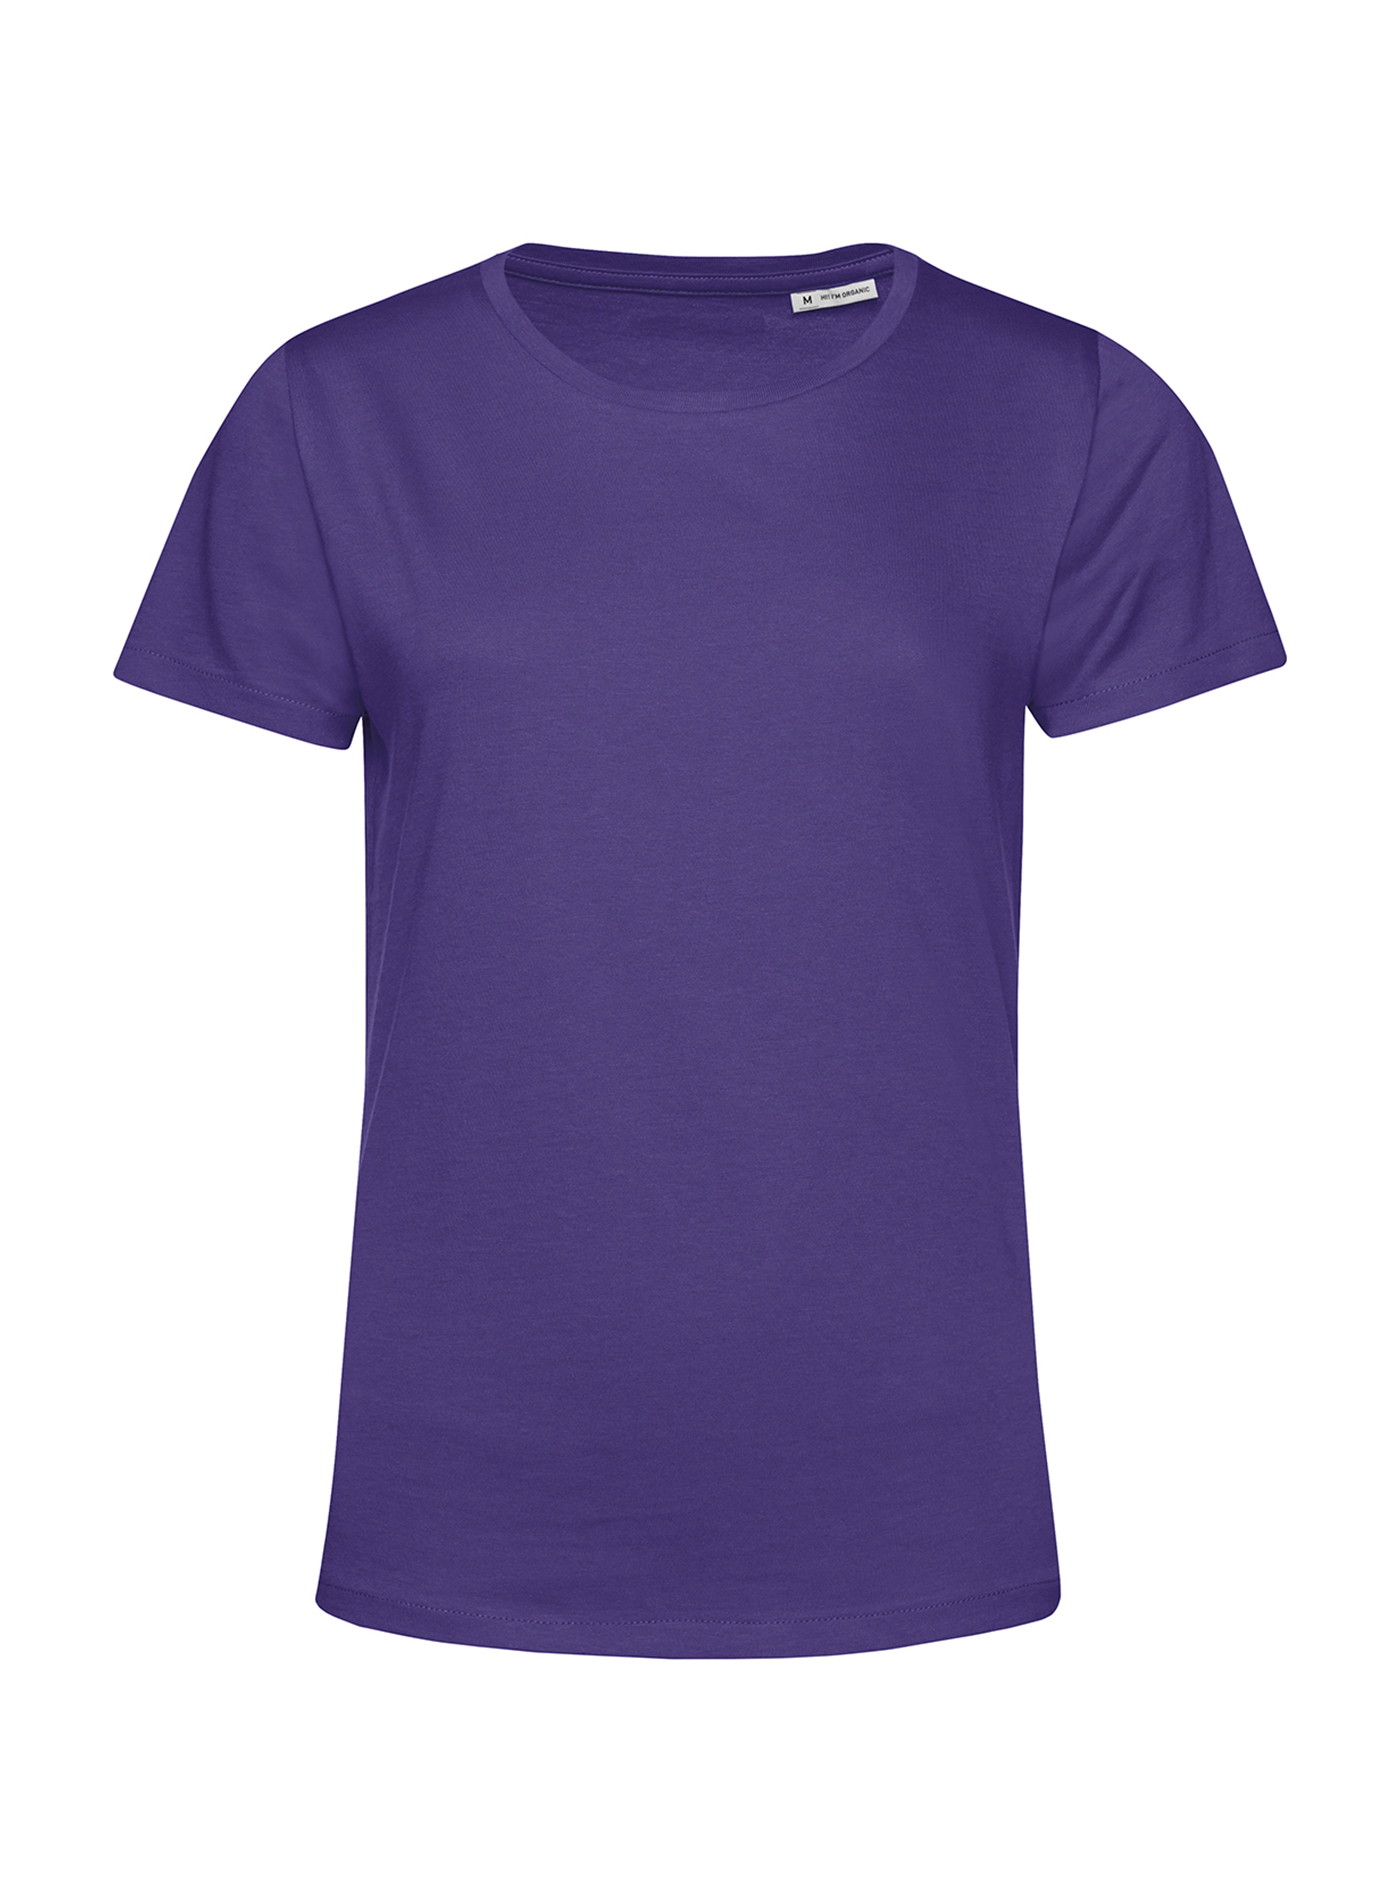 Dámské tričko B&C Collection Organic - Tmavě fialová L